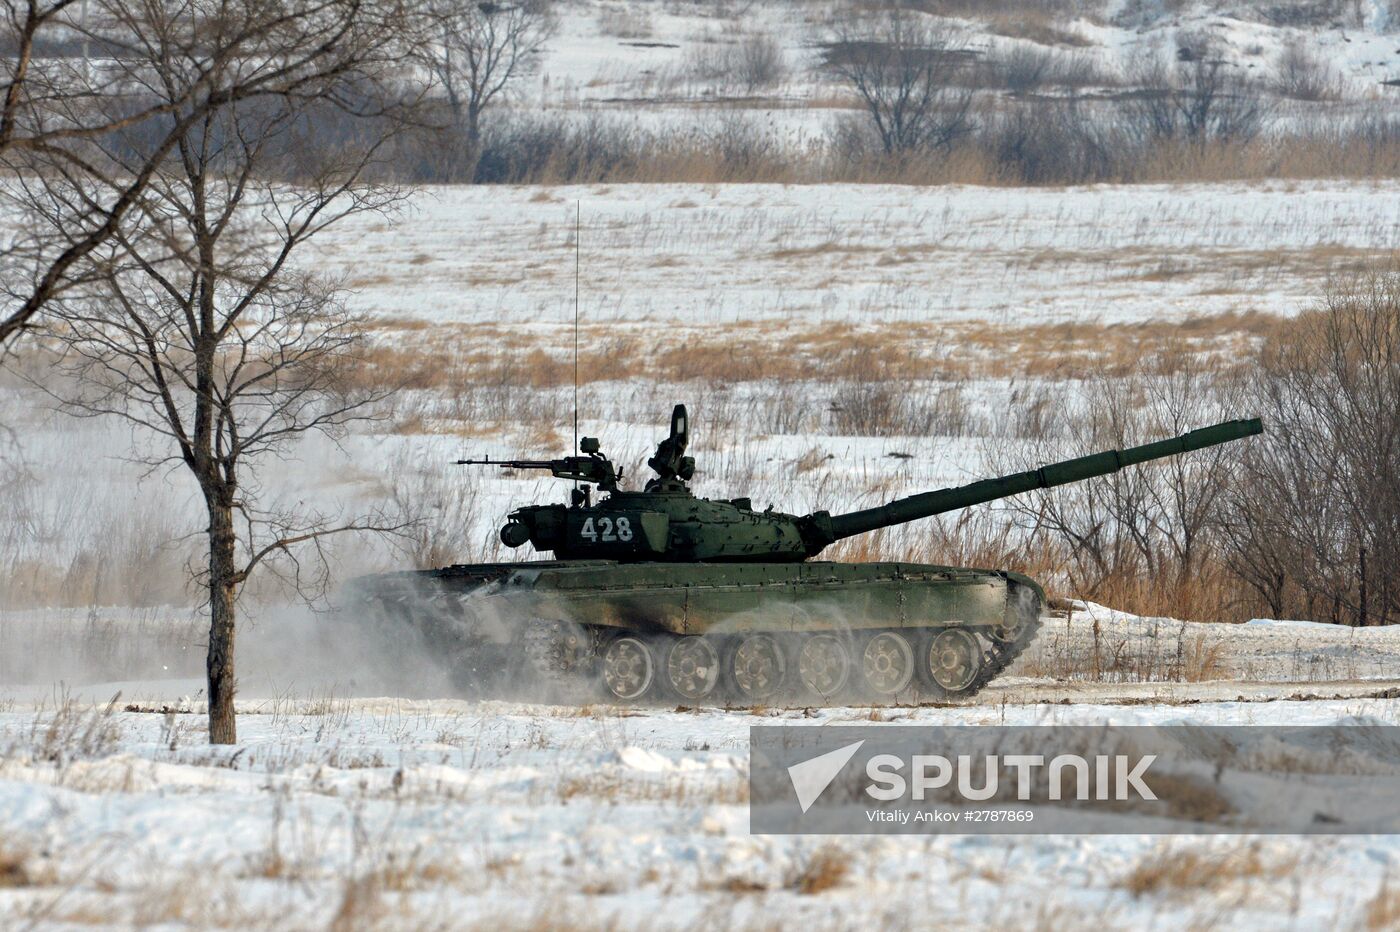 Tank Biathlon competition at Sergeyevka training range